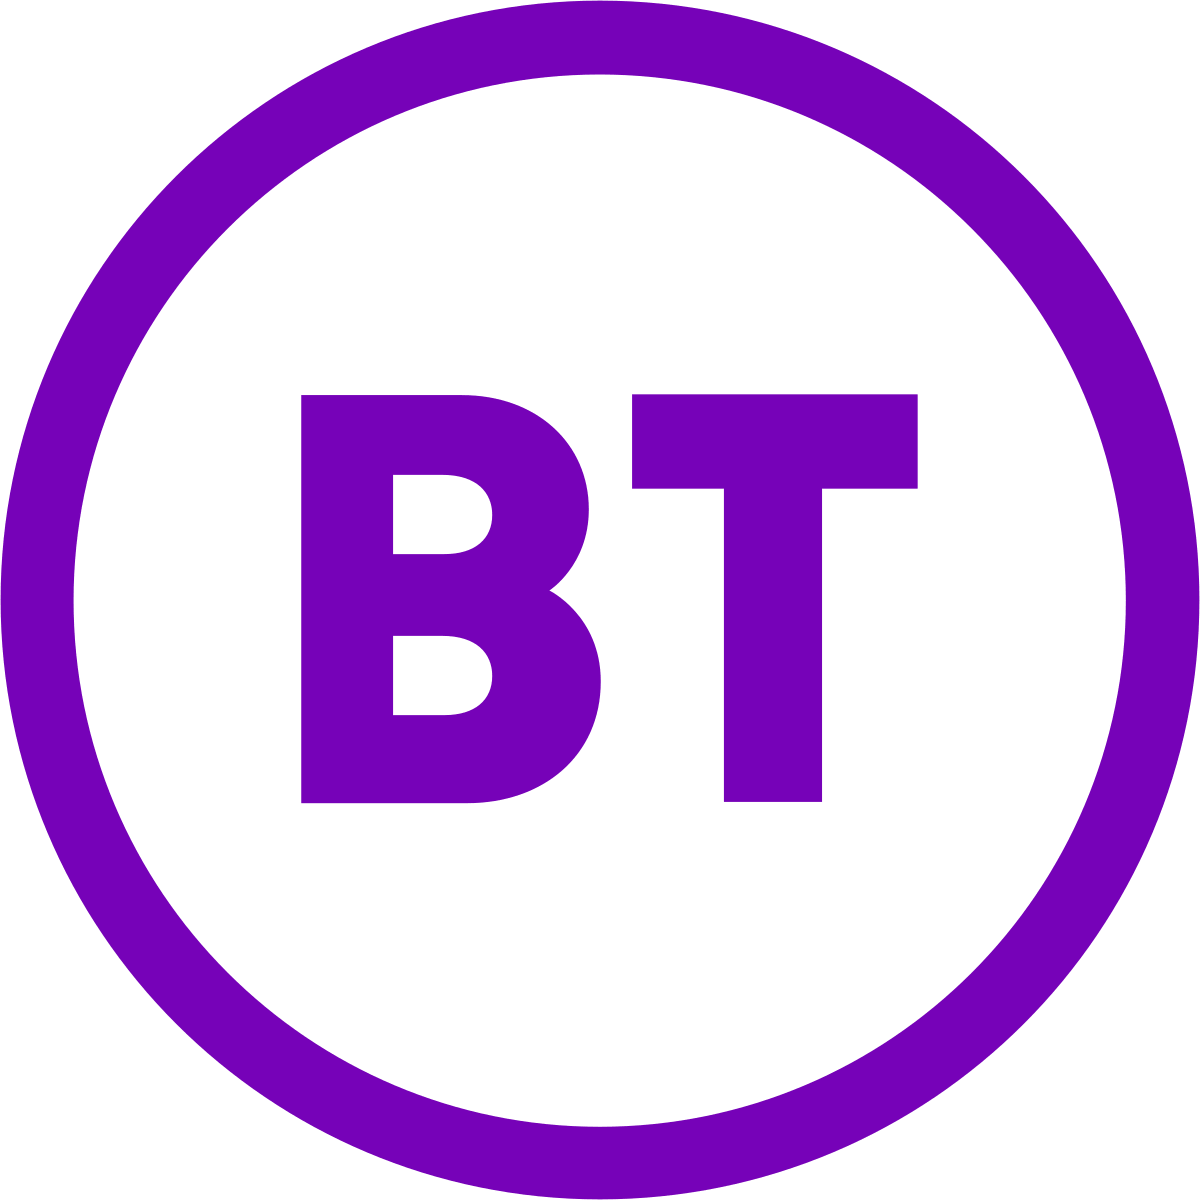 BT ISP logo.